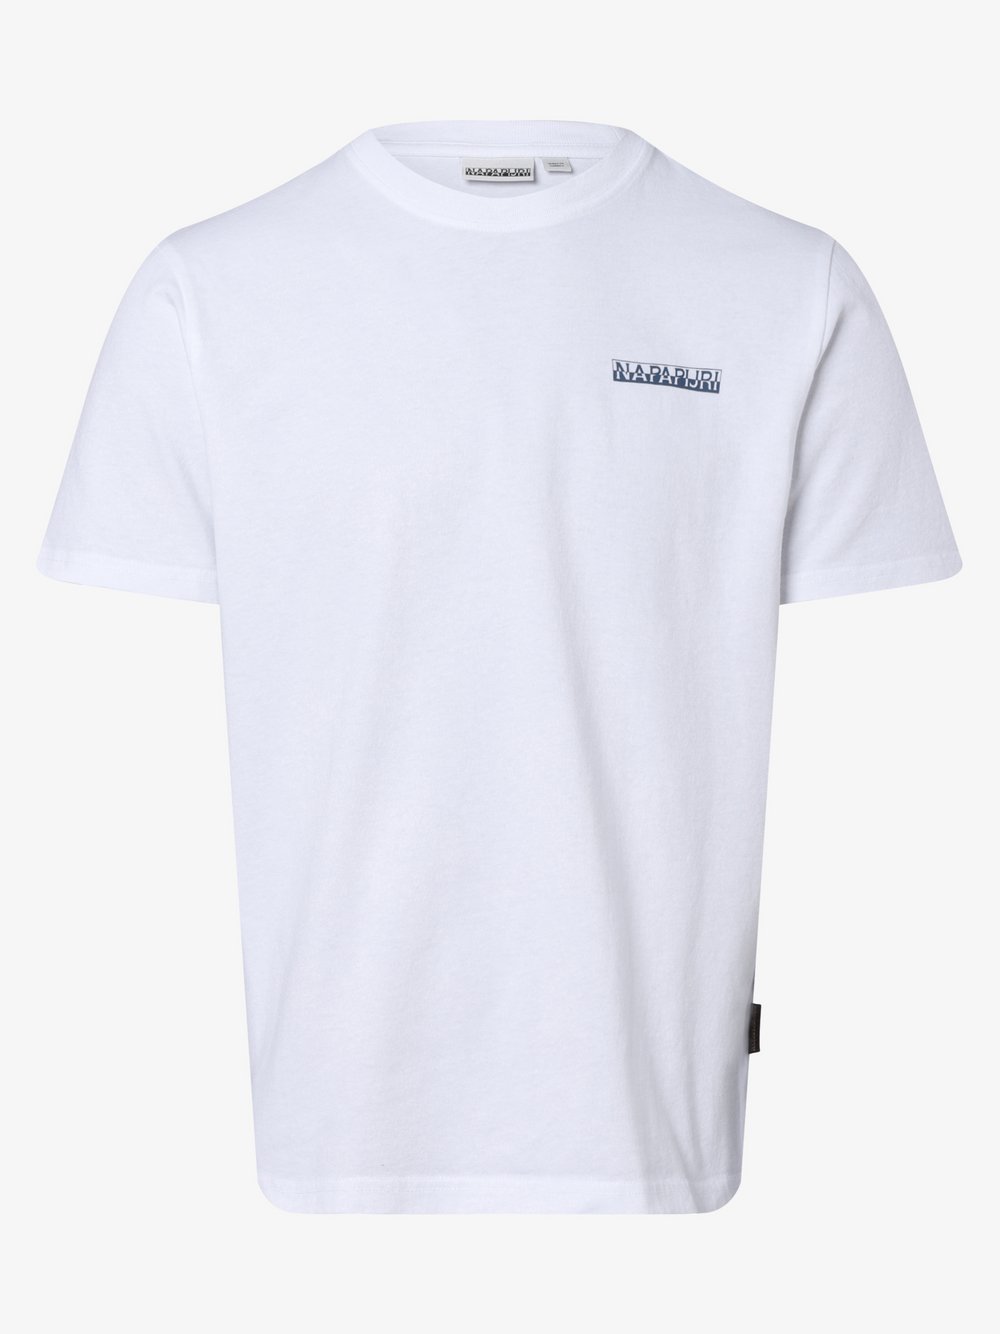 Napapijri - T-shirt męski, biały